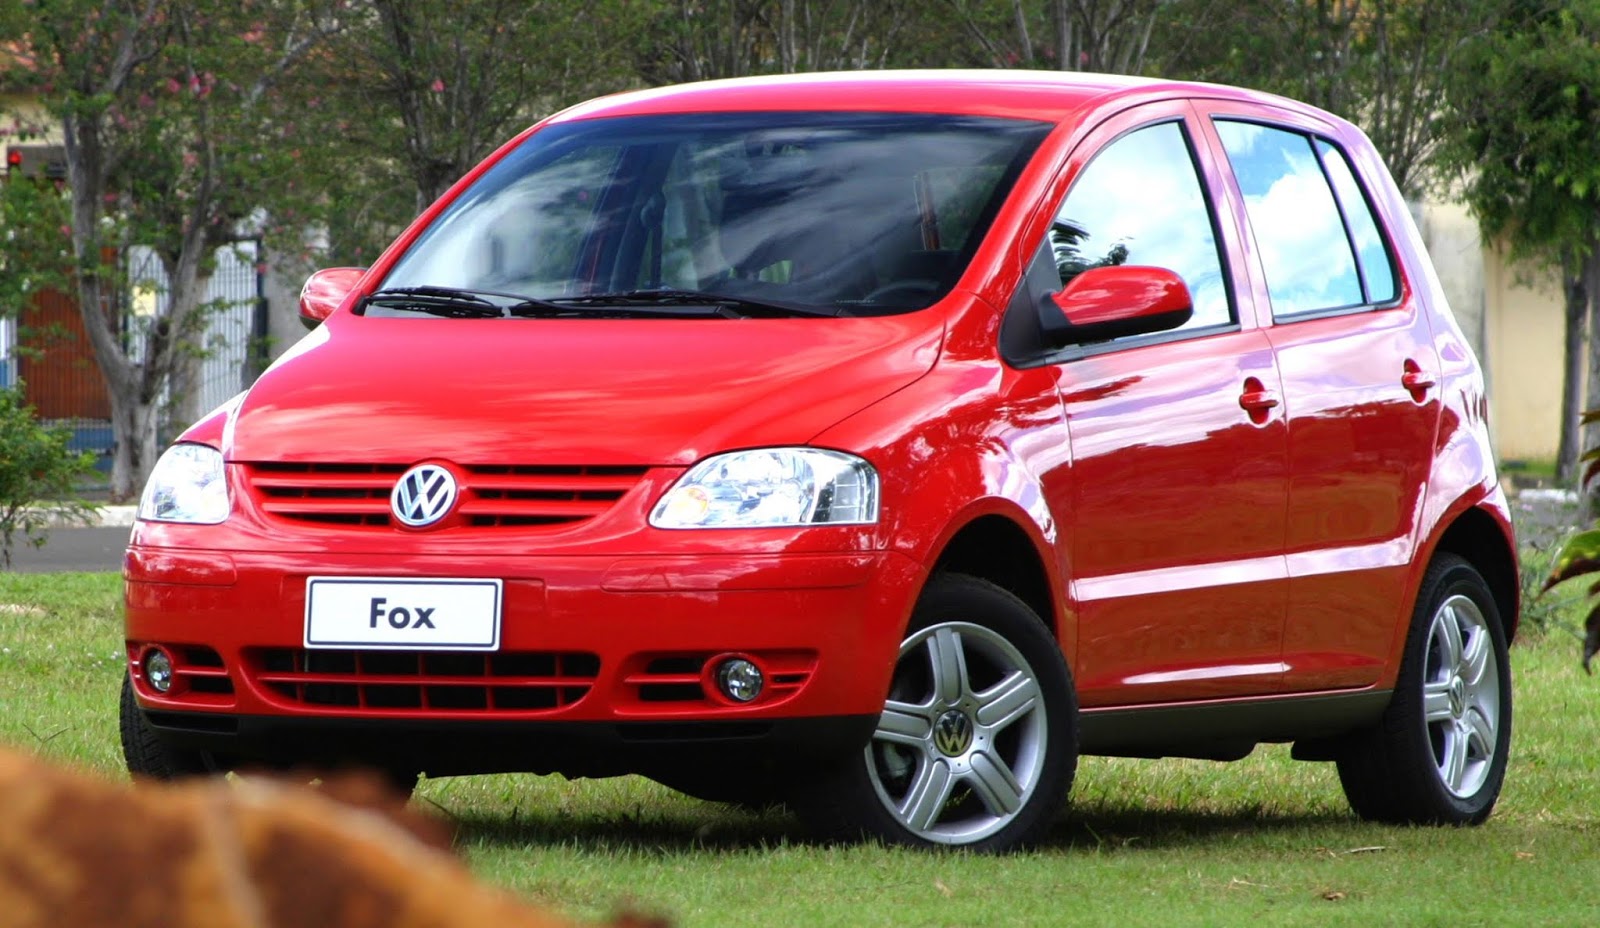 Fox 1 6. Фольксваген Фокс. VW Fox 2007. Фольксваген Фокс красный. VW Fox 00816.